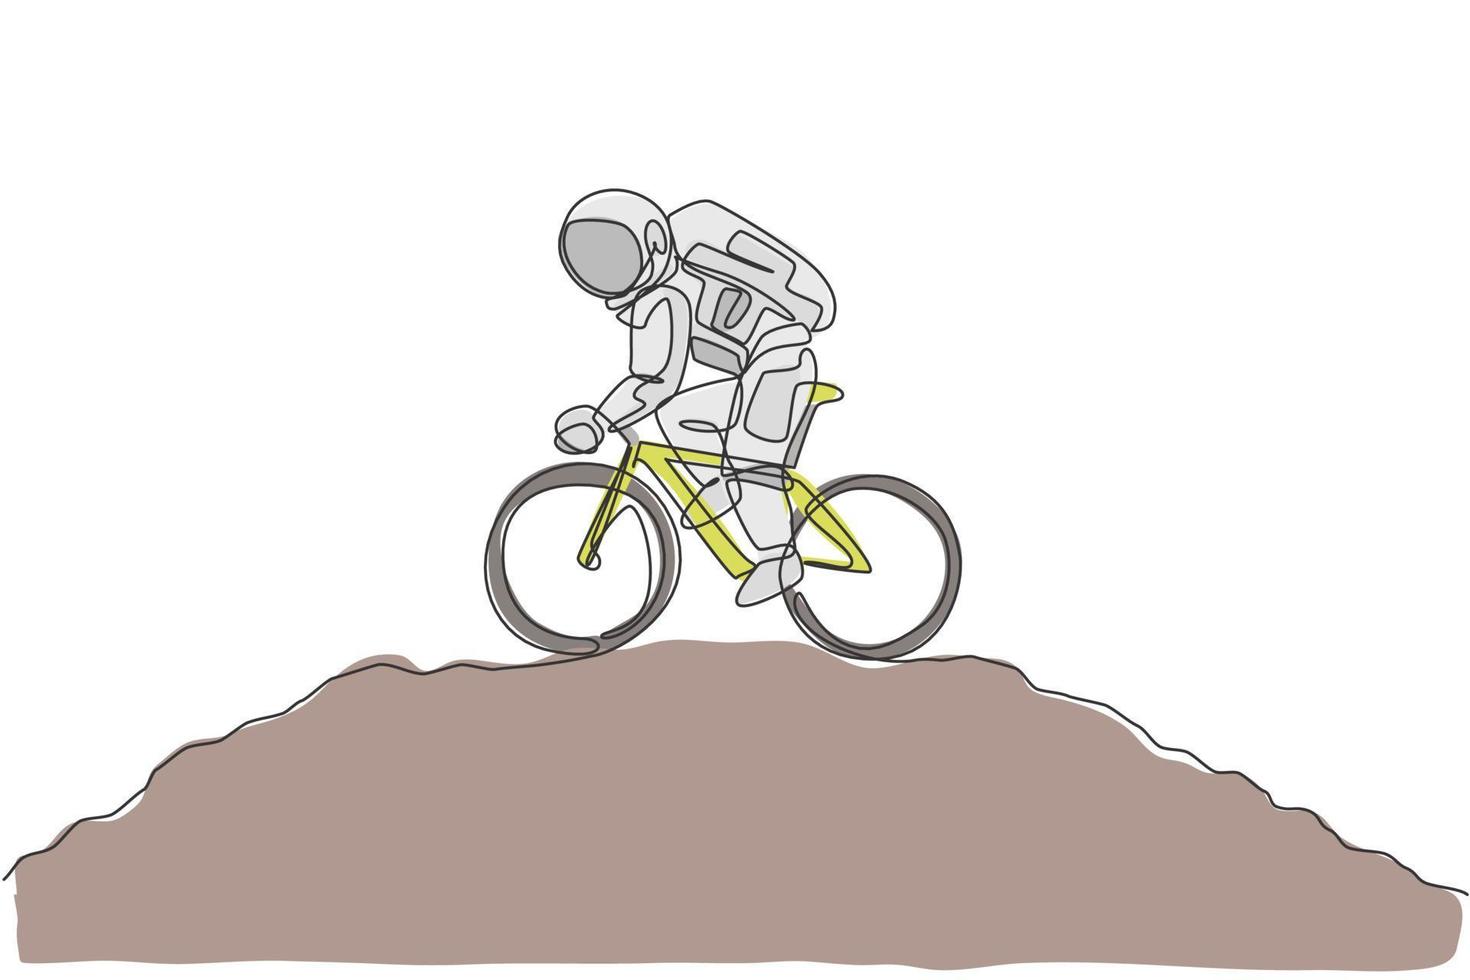 un dibujo de una sola línea de la bicicleta de la práctica del astronauta del astronauta en la ilustración del vector de la galaxia cósmica de la superficie de la luna. concepto de deporte de estilo de vida cosmonauta espacial saludable. diseño moderno de dibujo de línea continua